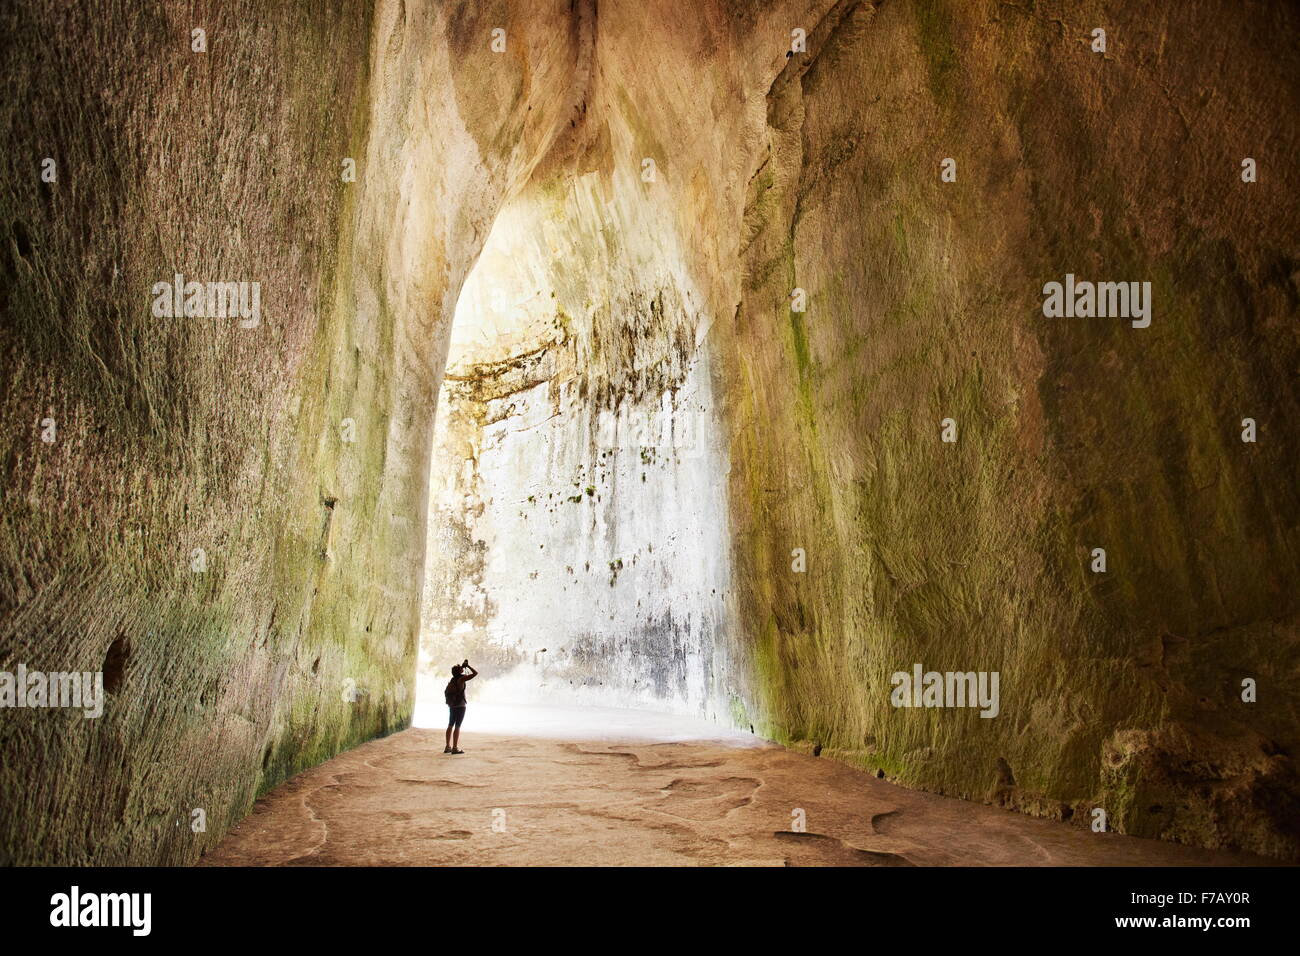 L'intérieur de l'Oreille de Dionysos, Orecchio di Dionisio - l'intérieur de la grotte, Syracuse, Sicile, Italie Banque D'Images